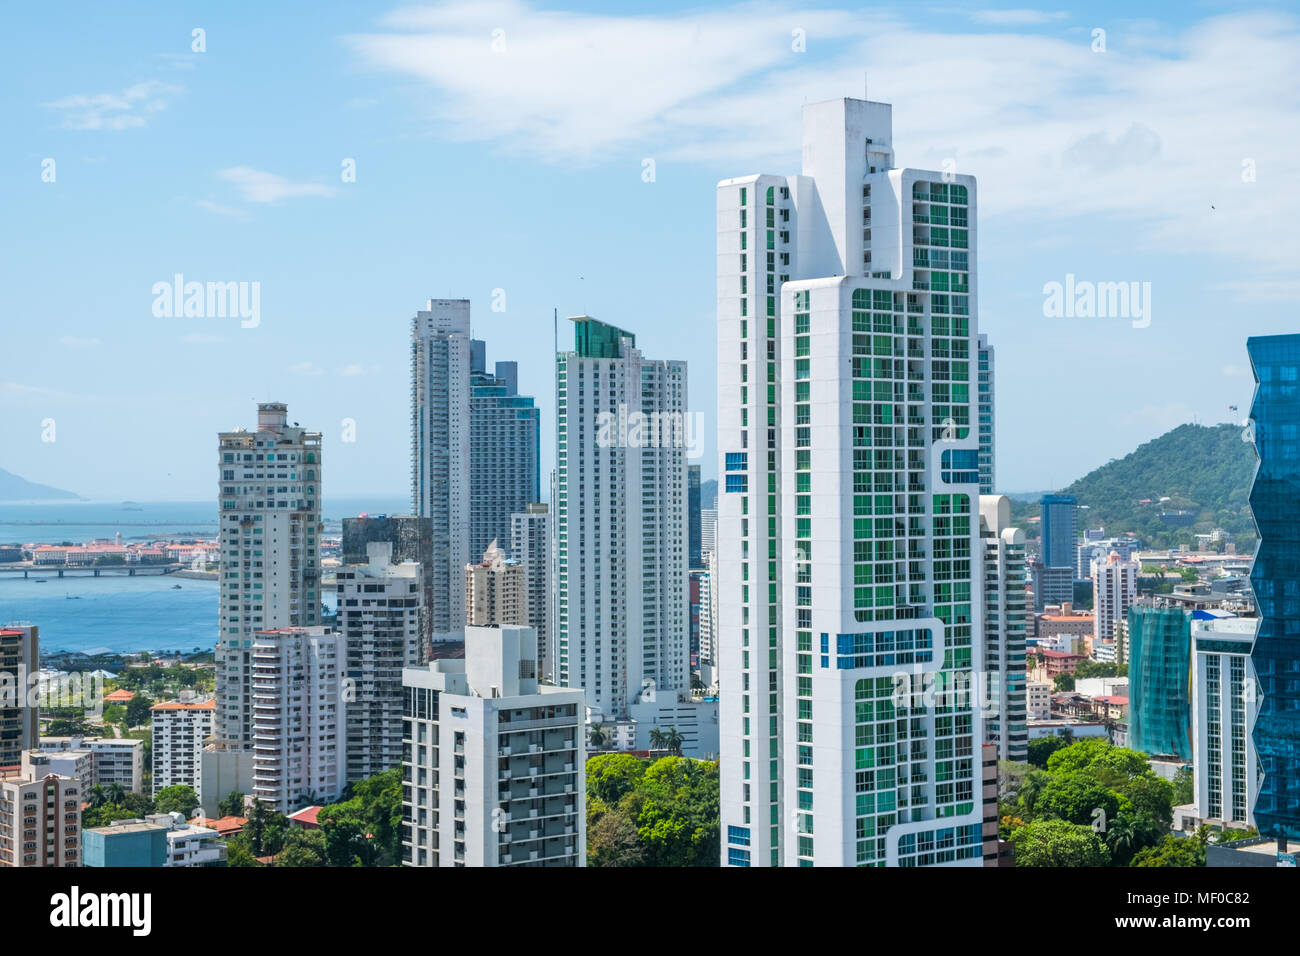 El perfil de la ciudad, los edificios rascacielos, moderna ciudad de Panamá Foto de stock